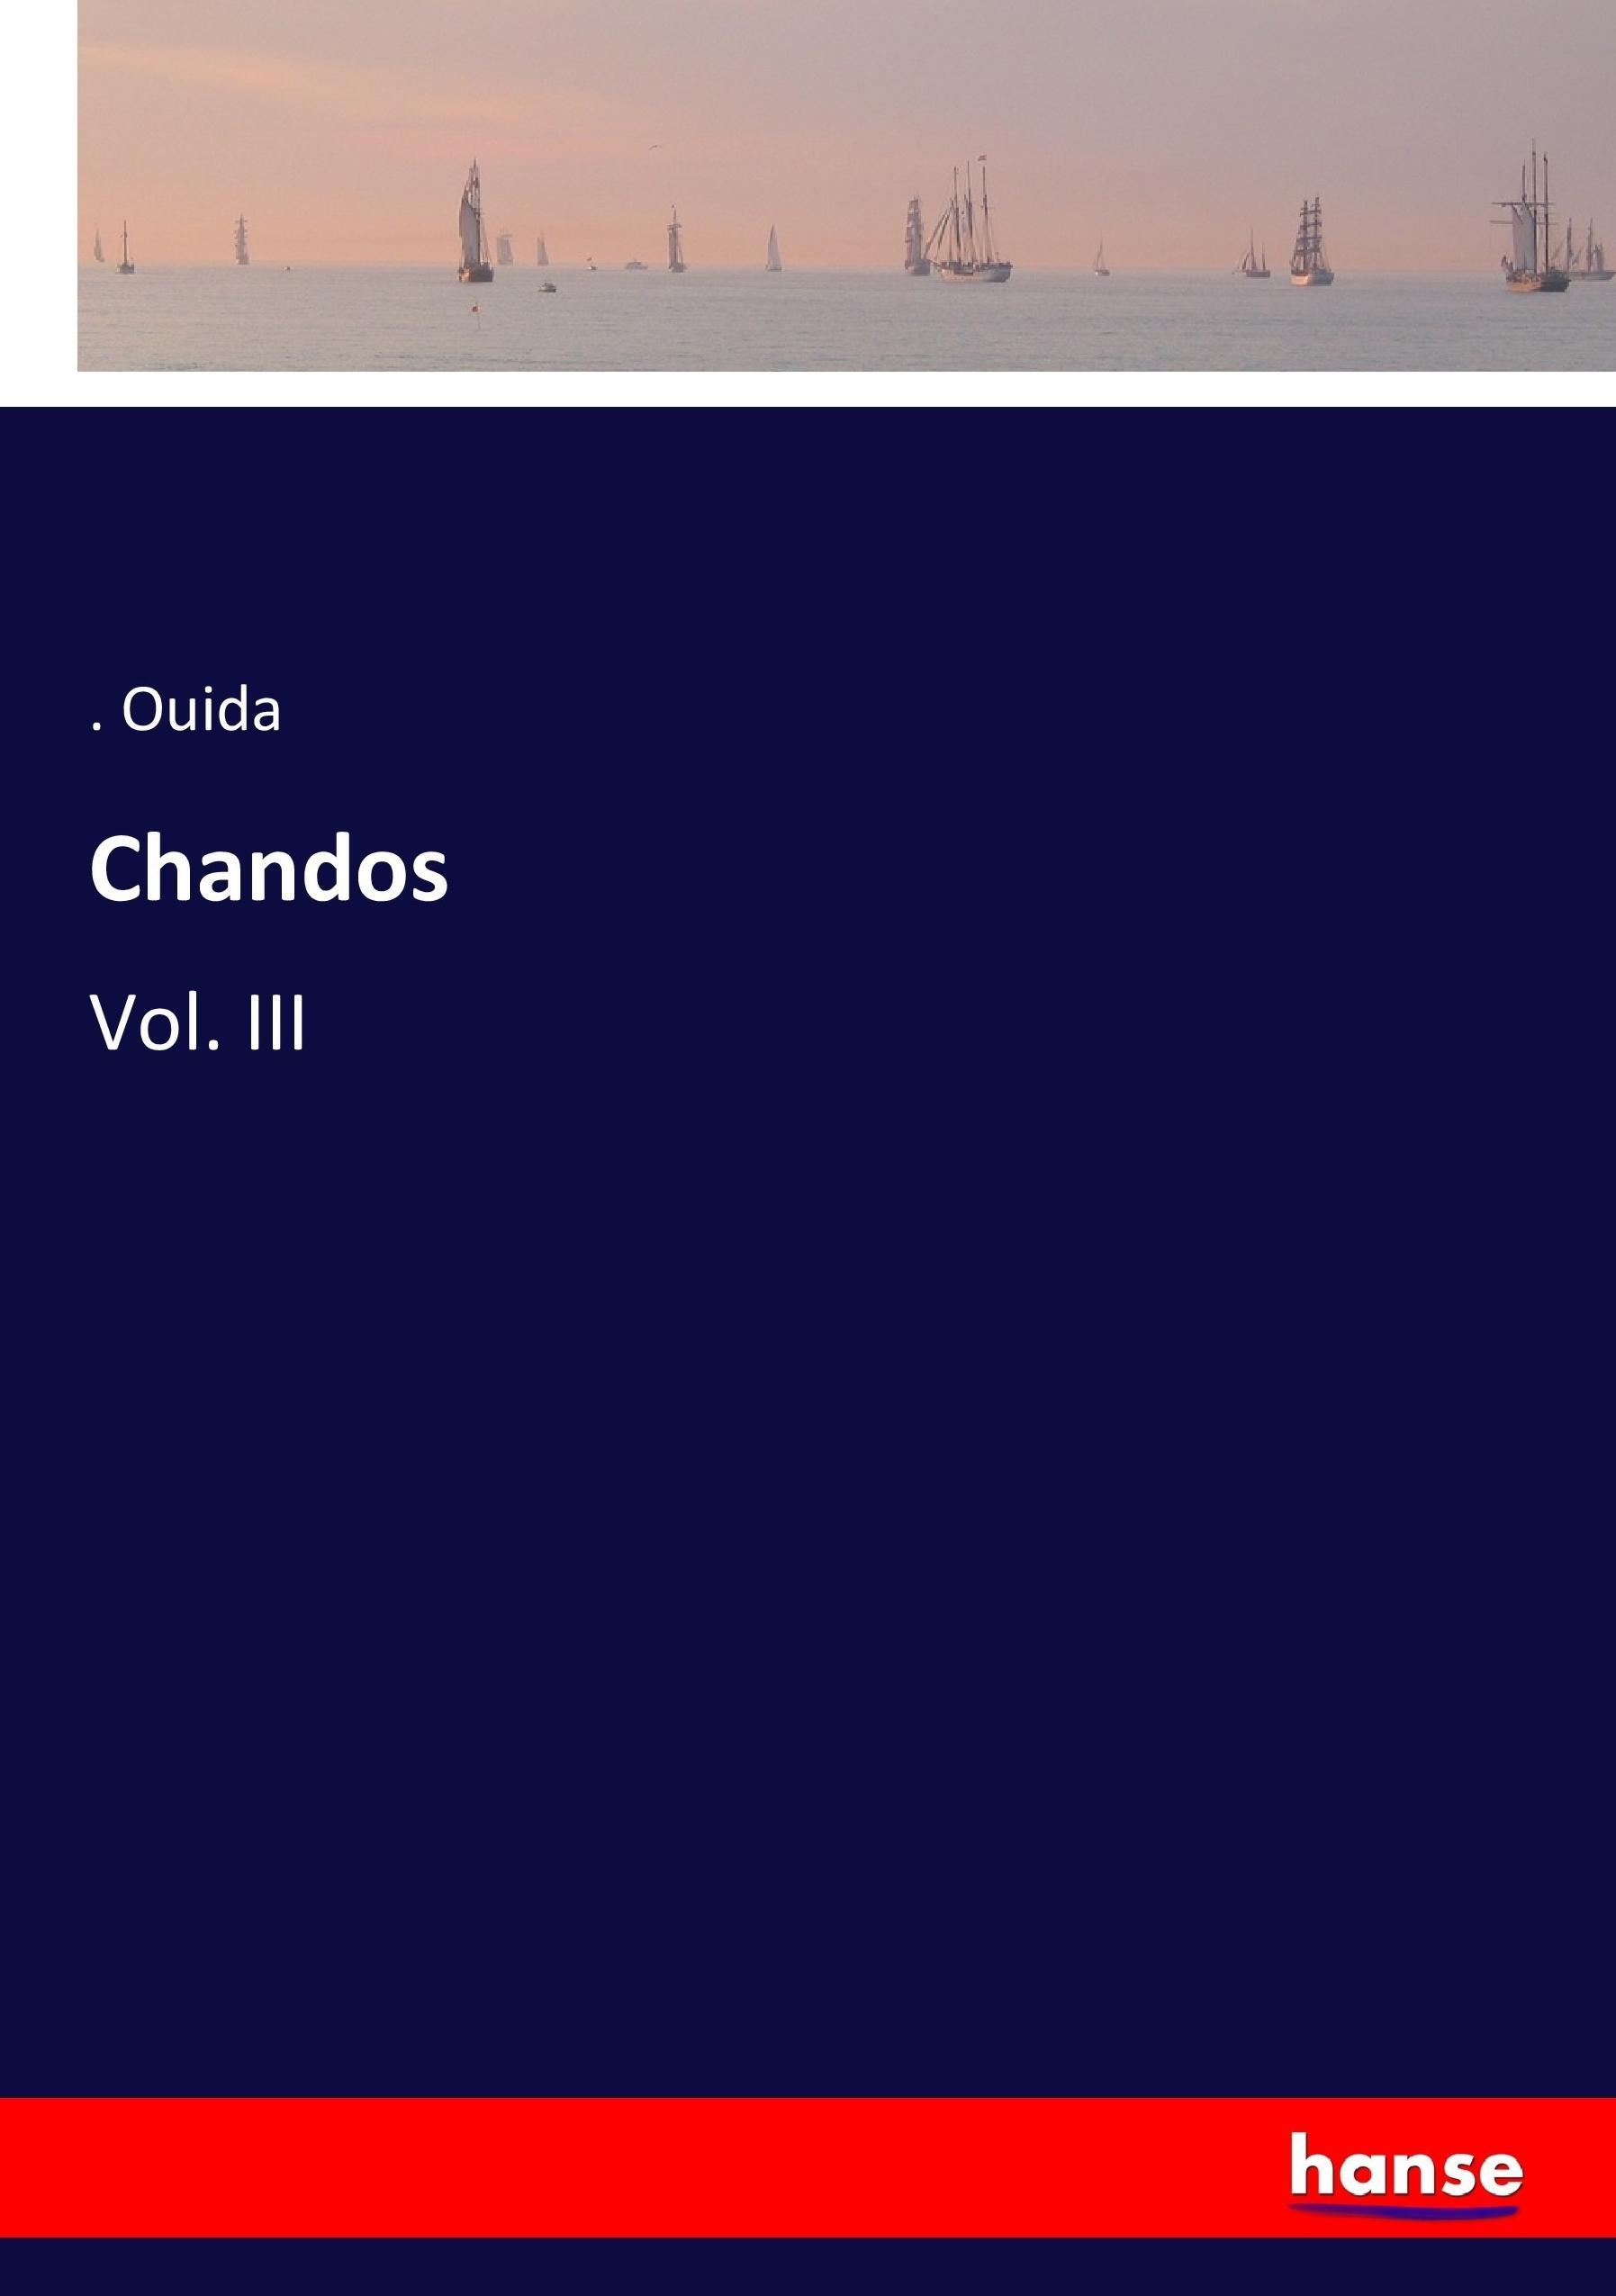 Chandos | Vol. III | . . Ouida | Taschenbuch | Paperback | 412 S. | Englisch | 2017 | hansebooks | EAN 9783337067205 - Ouida, . .